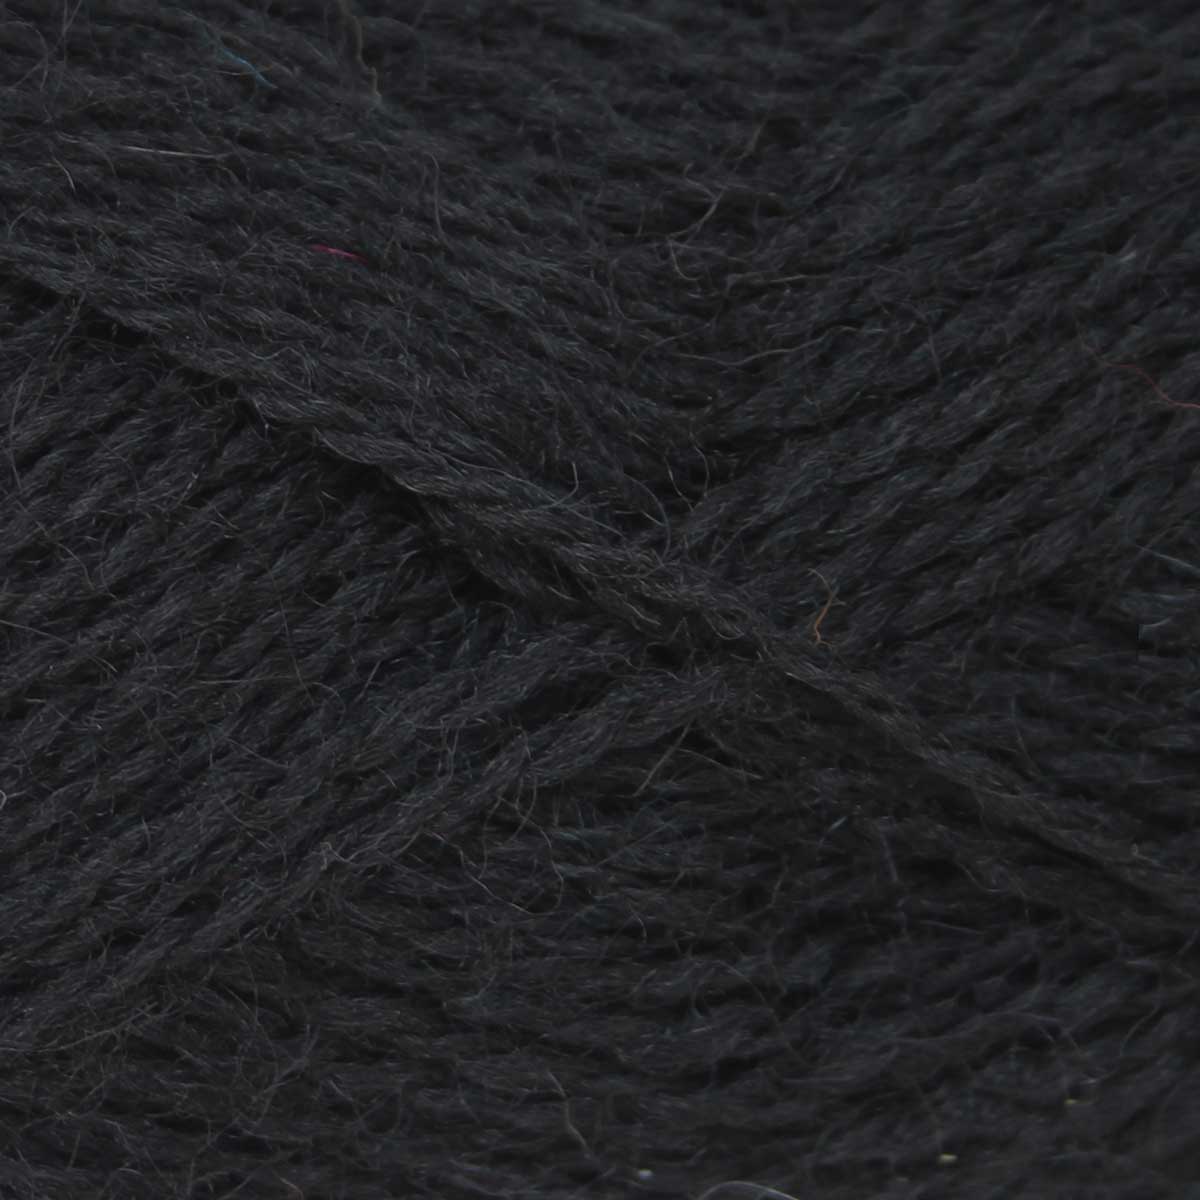 Pip Colourwork 4ply: 100% British Hand Knitting Wool 25g Ball